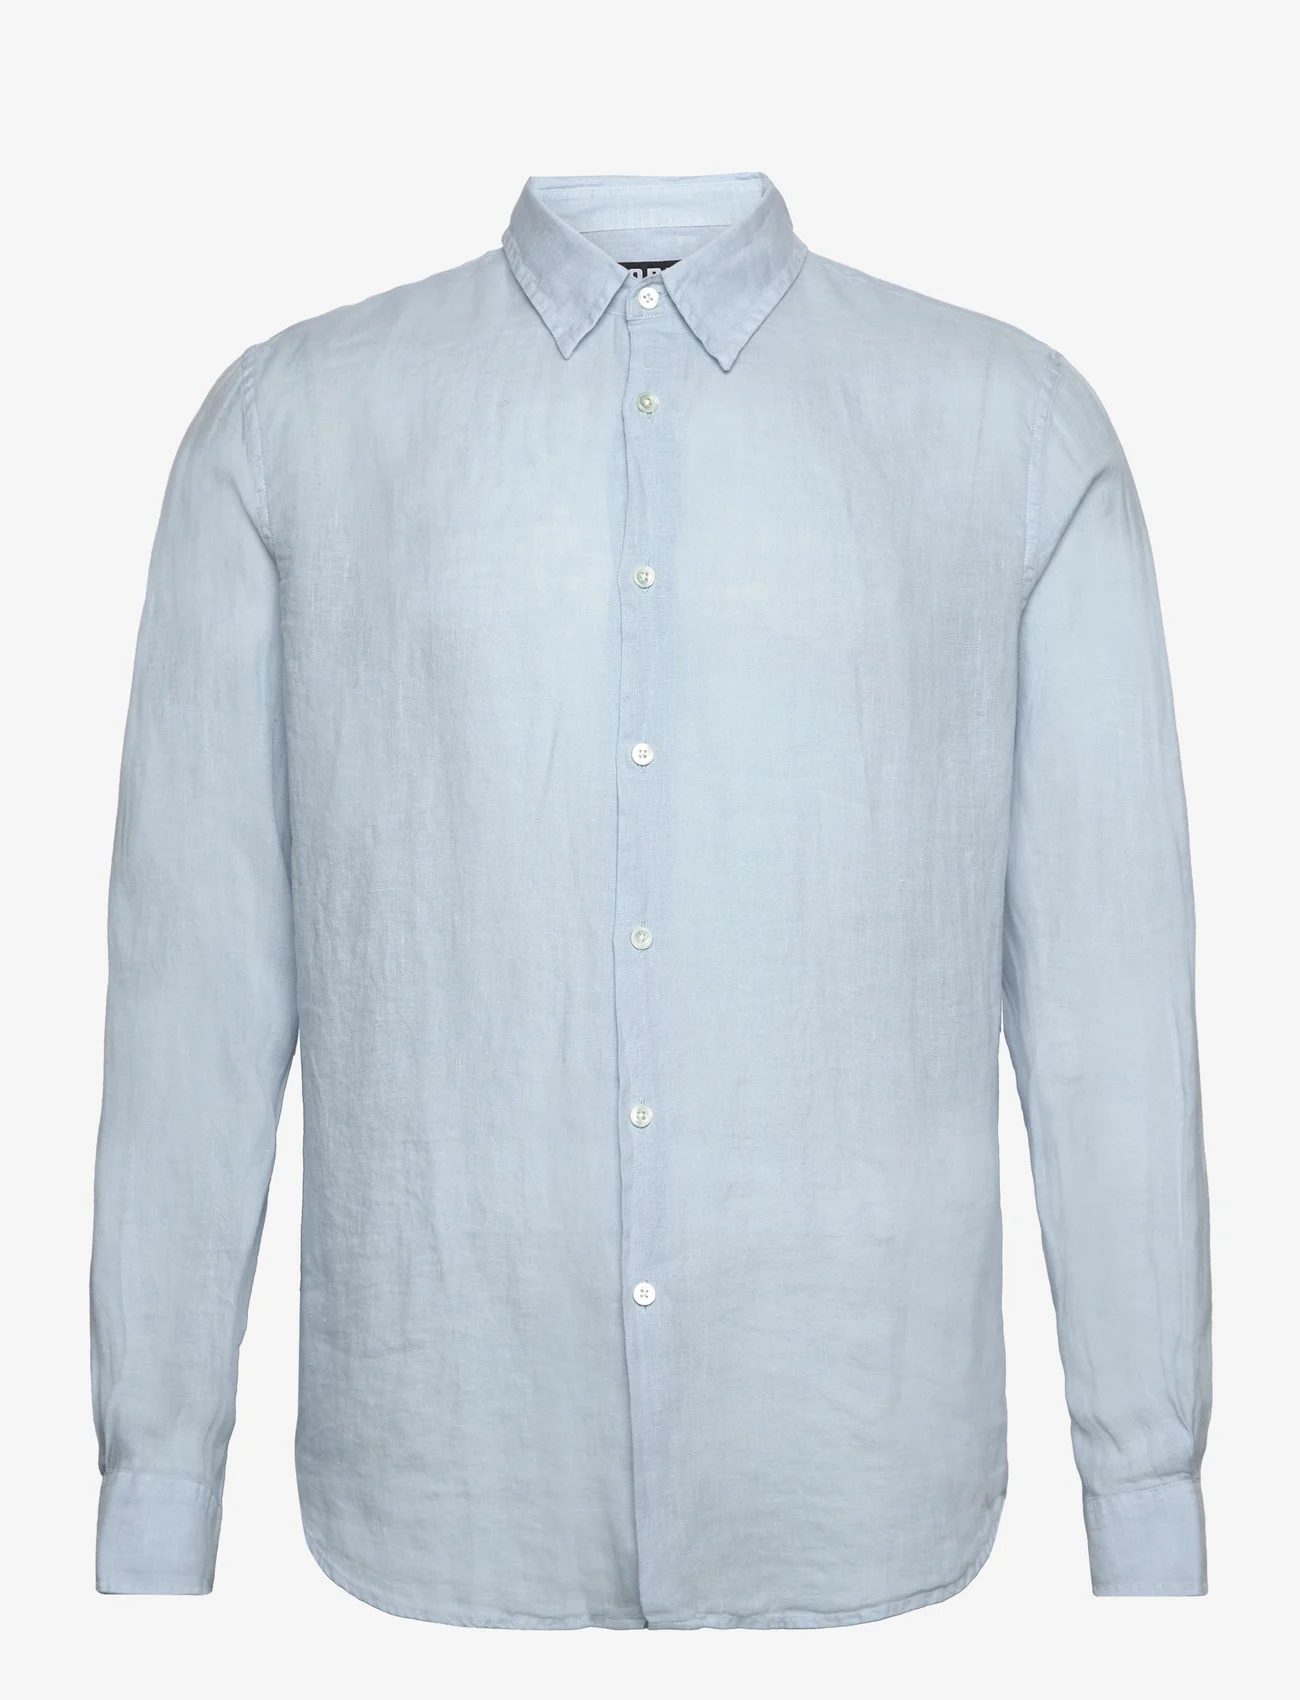 Hope - Regular Fit Linen Shirt - linen shirts - sky blue linen - 0